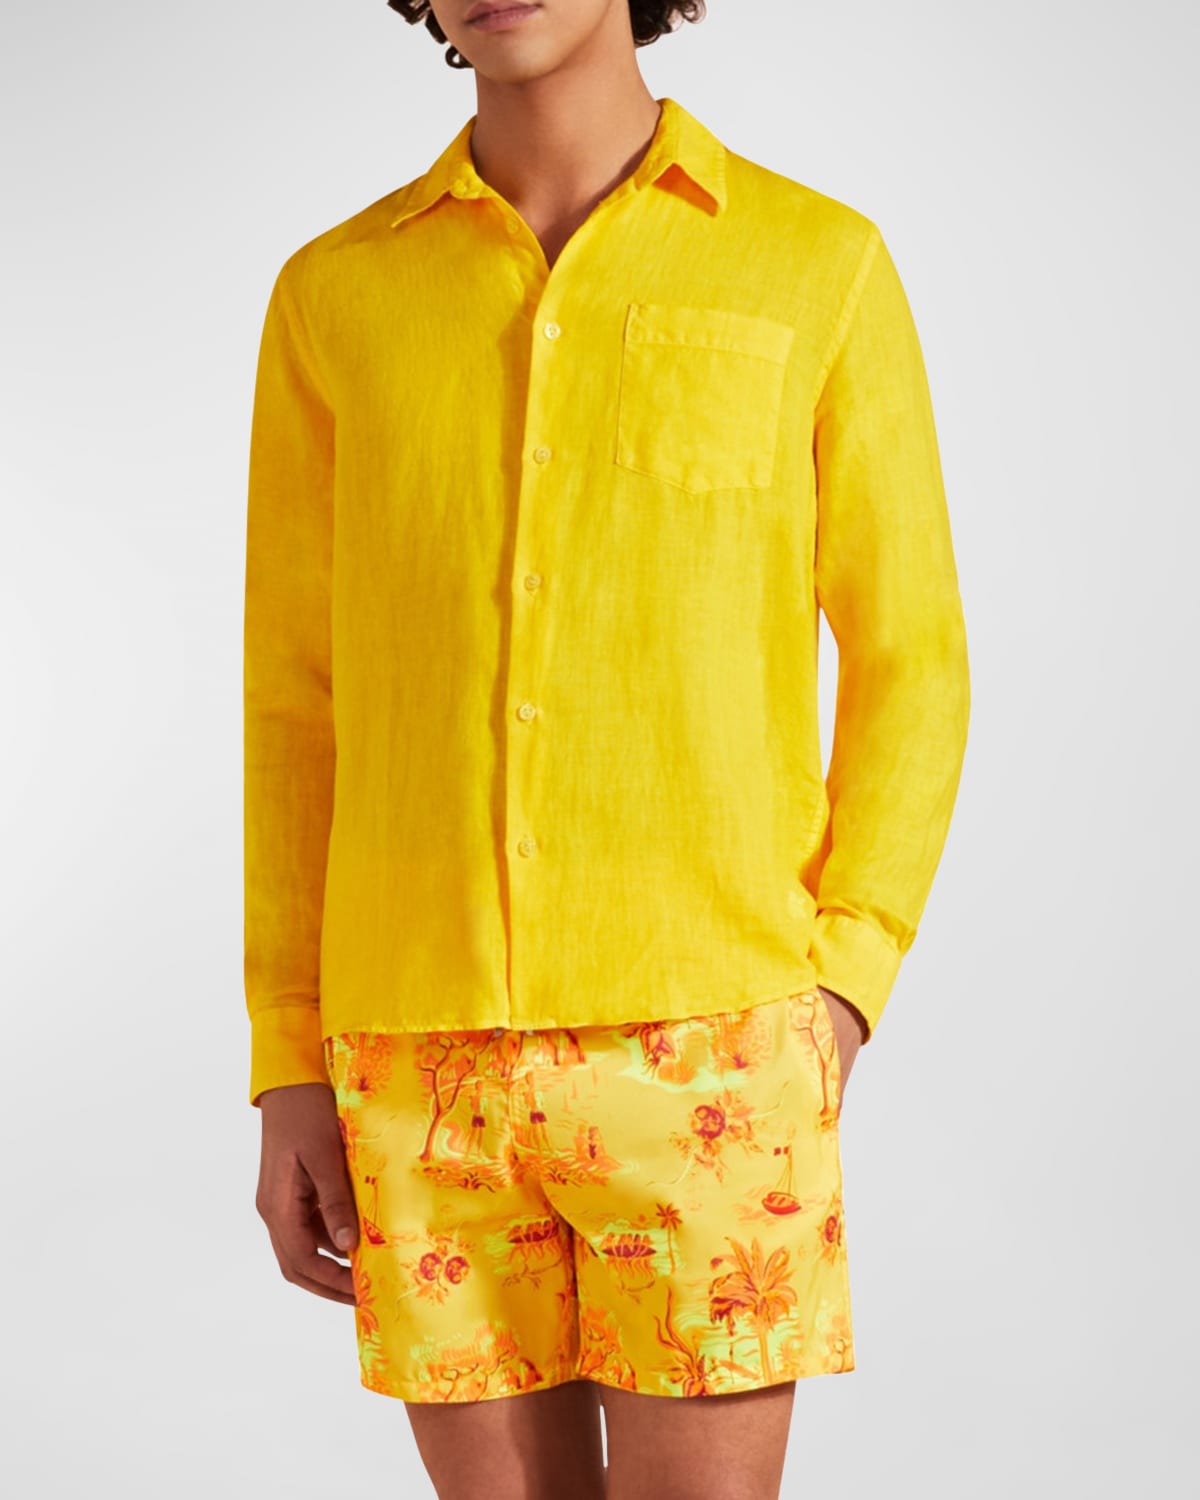 Vilebrequin Men's Caroubis Solid Linen Sport Shirt In Yellow